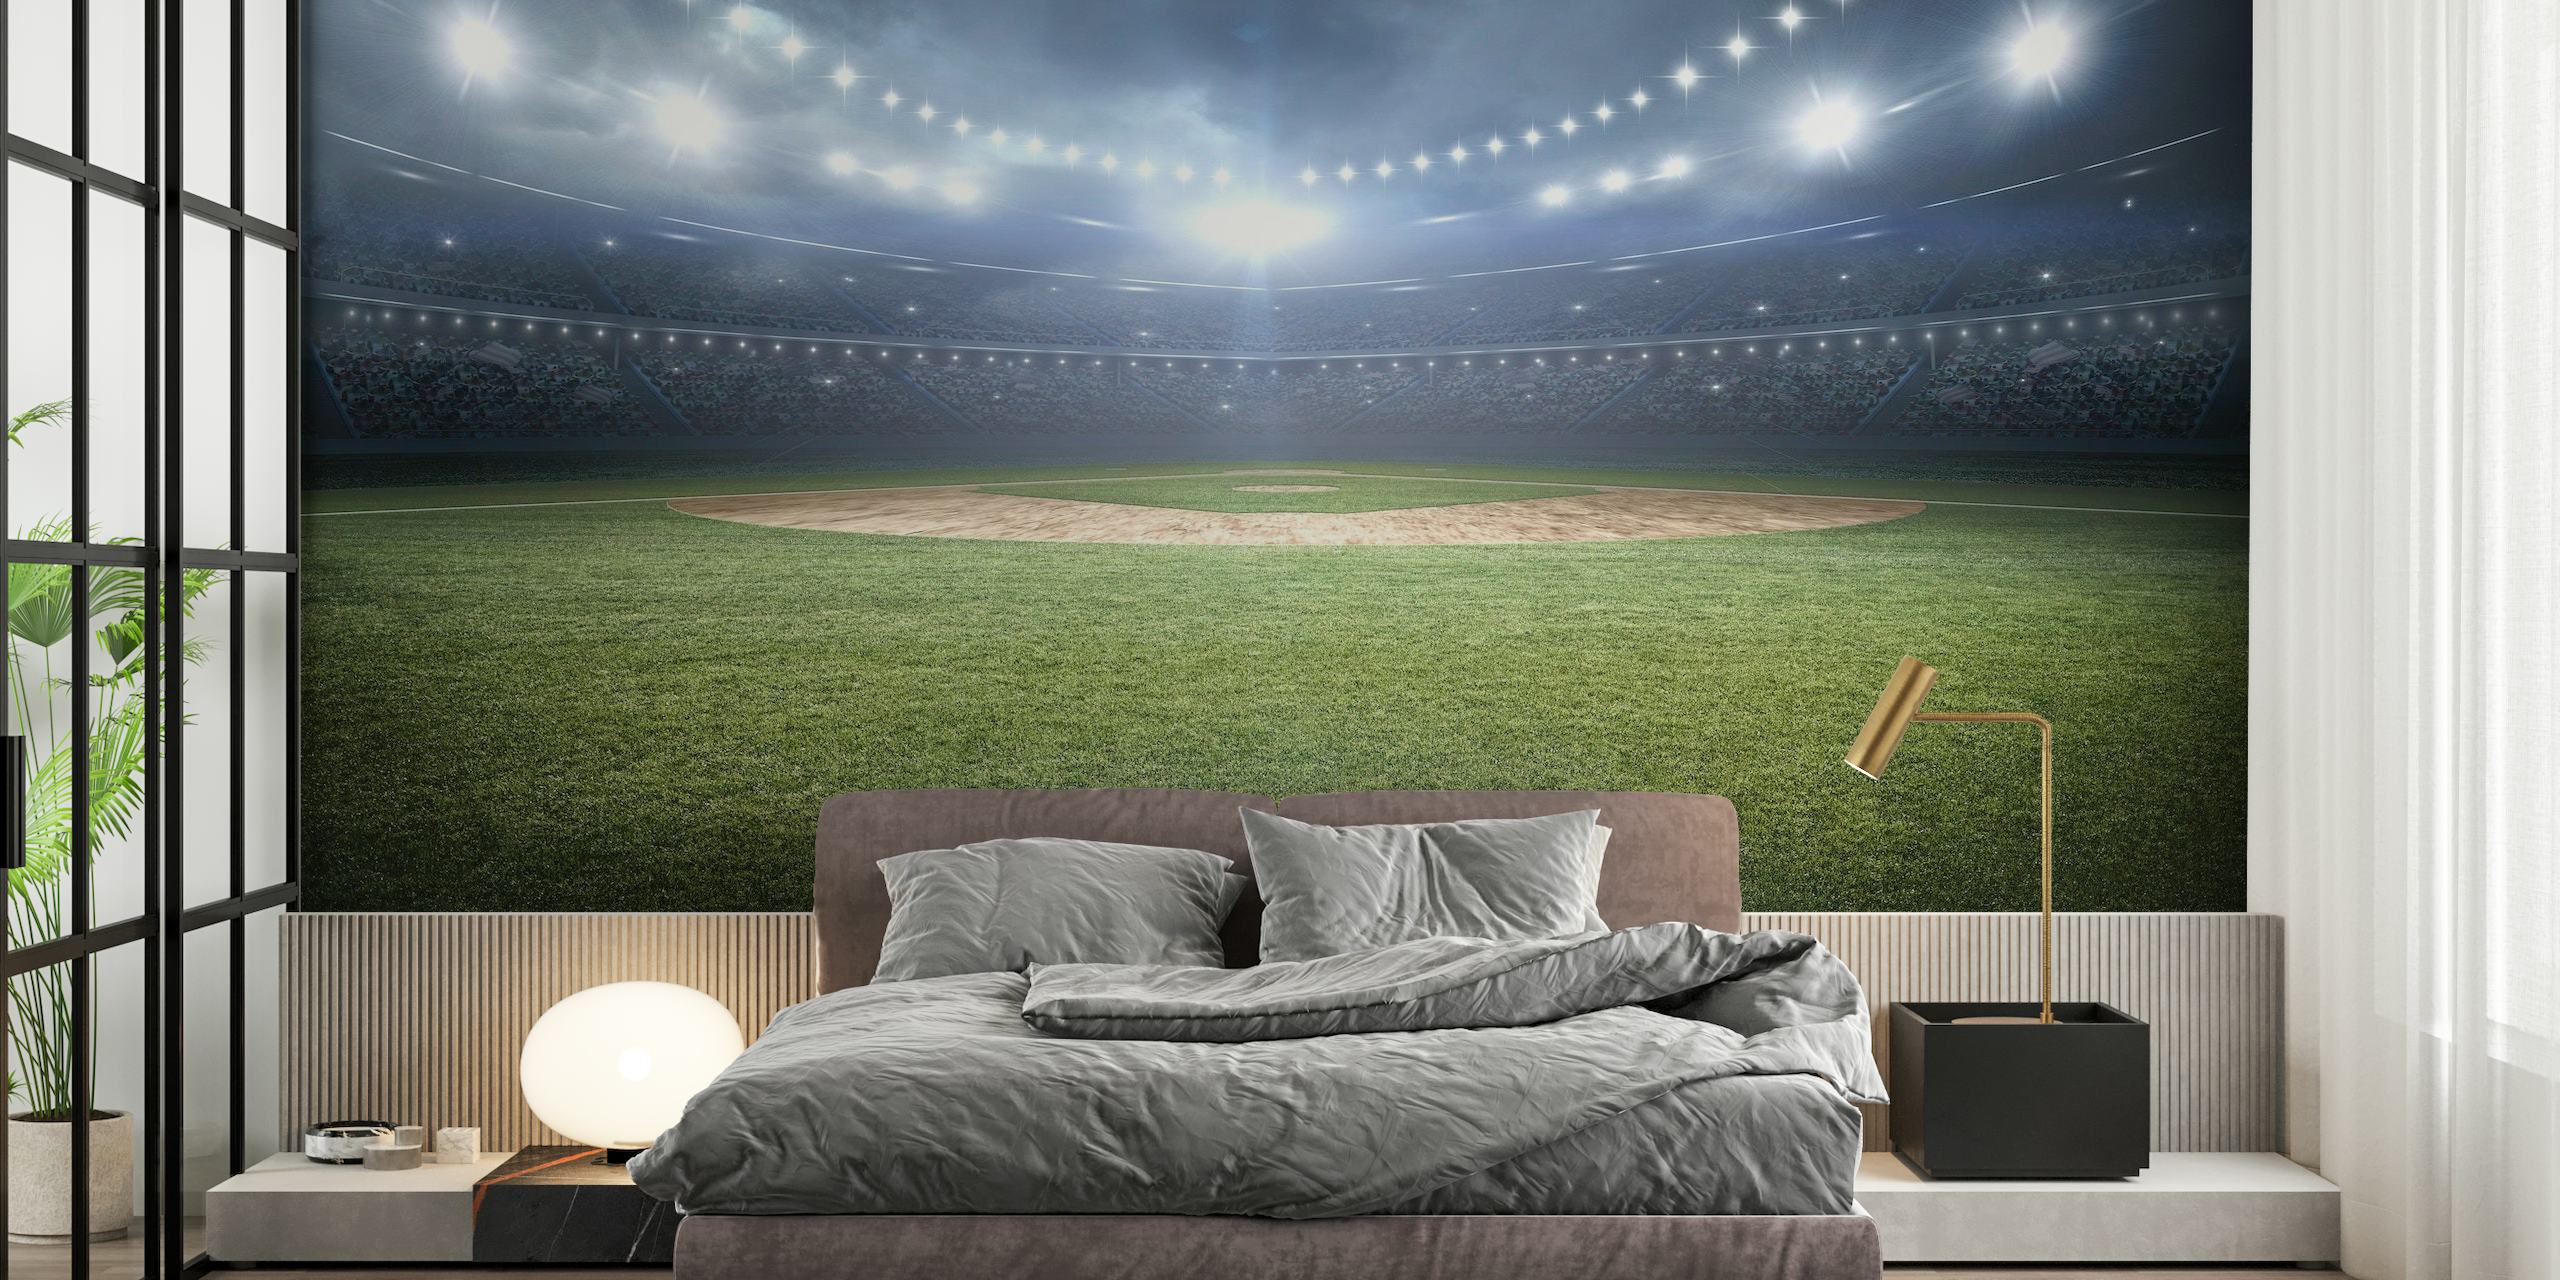 Panoramische muurschildering van een honkbalstadion 's nachts met verlichte lichten die over het veld schijnen